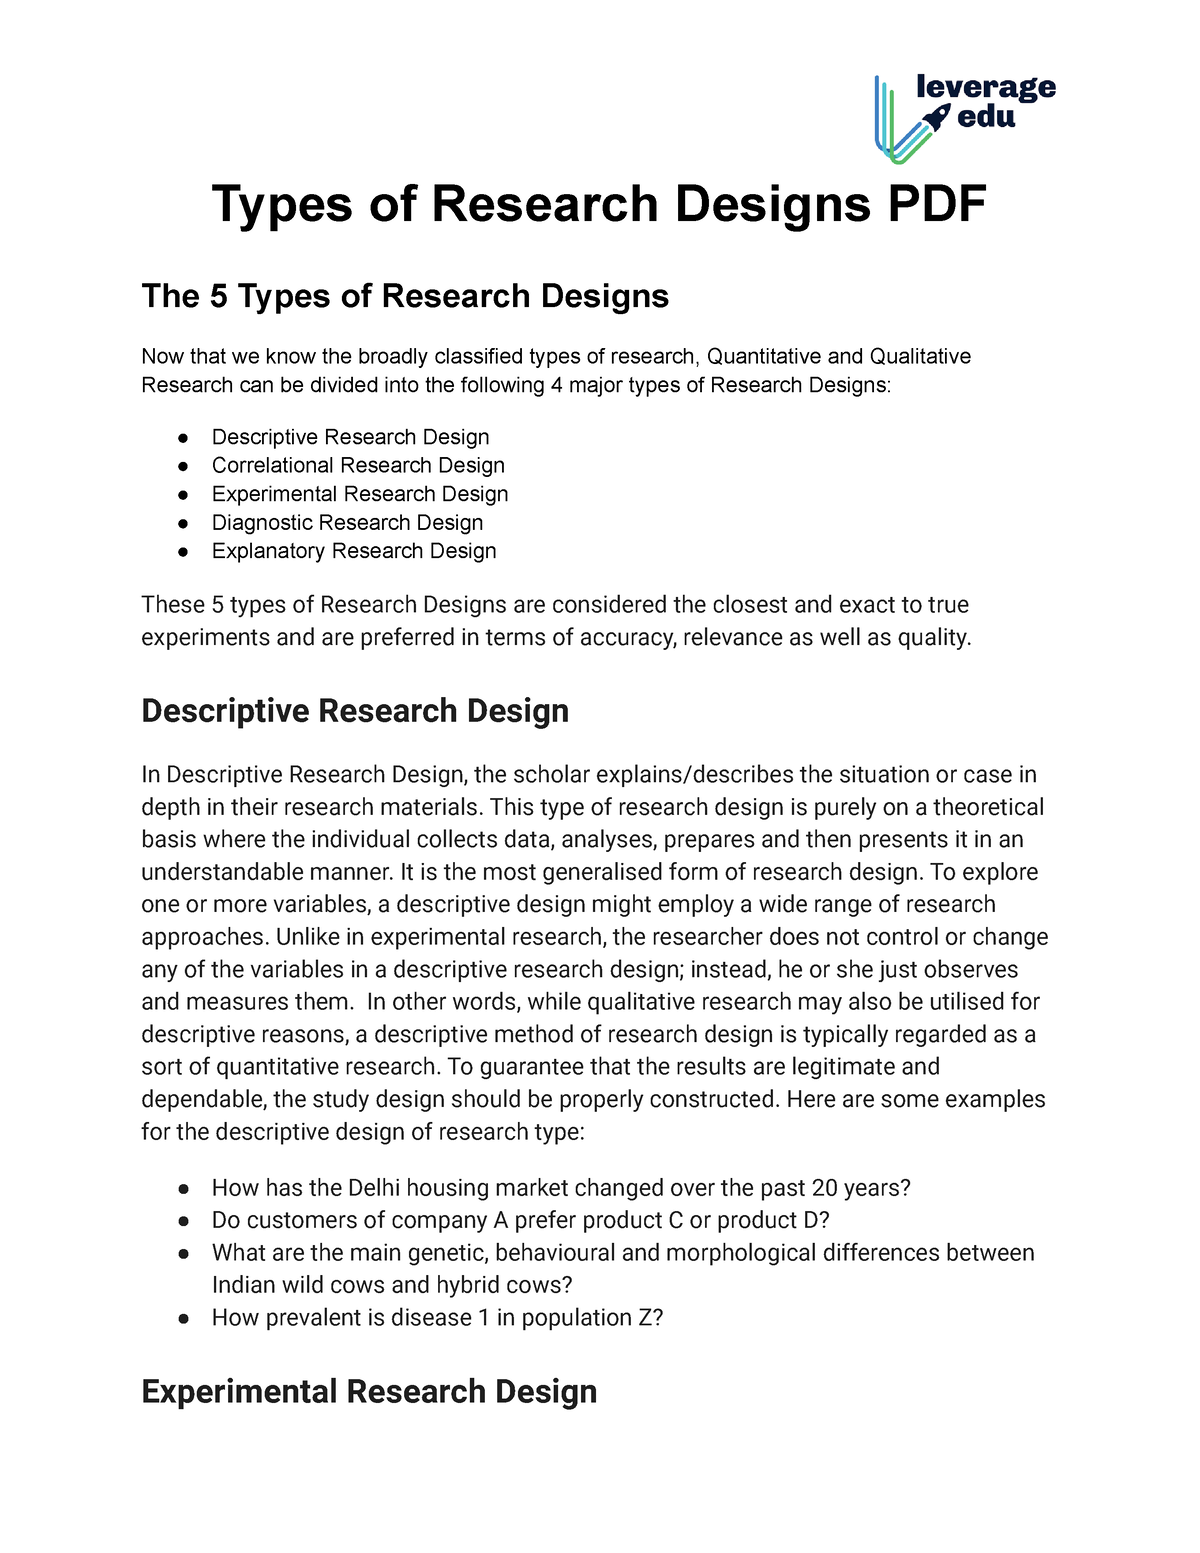 descriptive research design literature